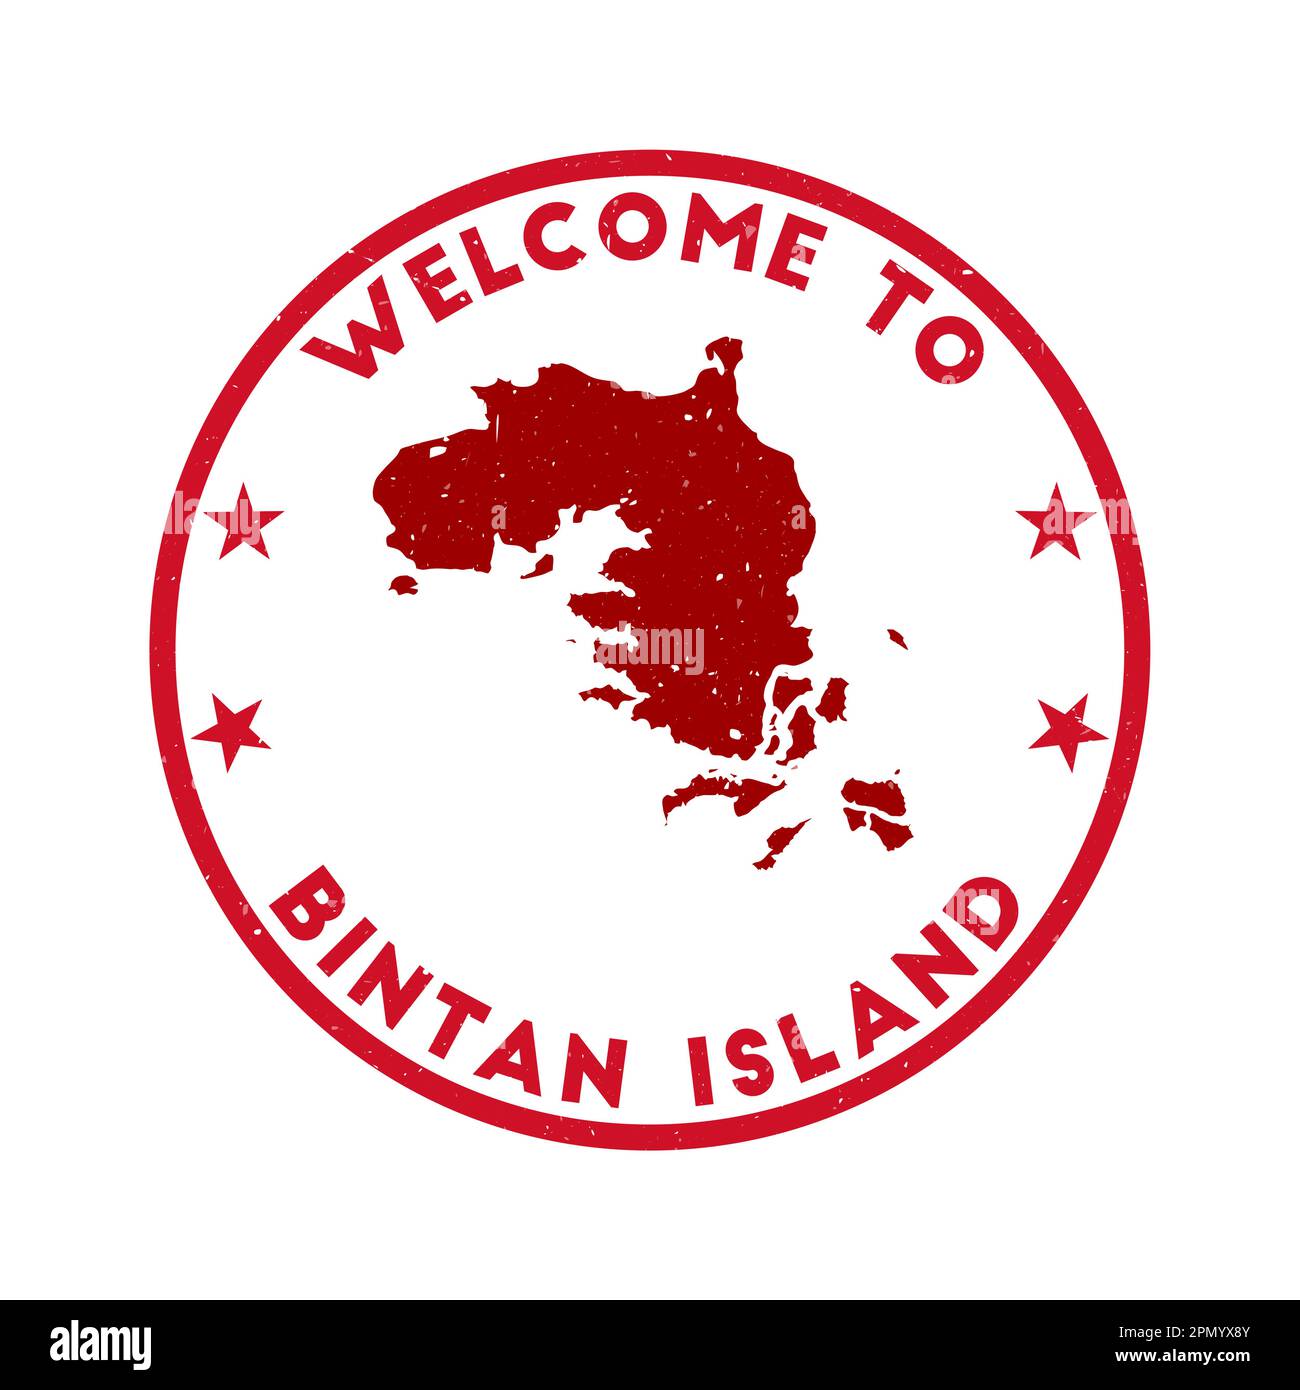 Willkommen auf Bintan Island. Grunge Island Rundstempel mit Textur in Super Rose Red. Geometrischer Seehund im Vintage-Stil der Bintan-Insel. Element Stock Vektor